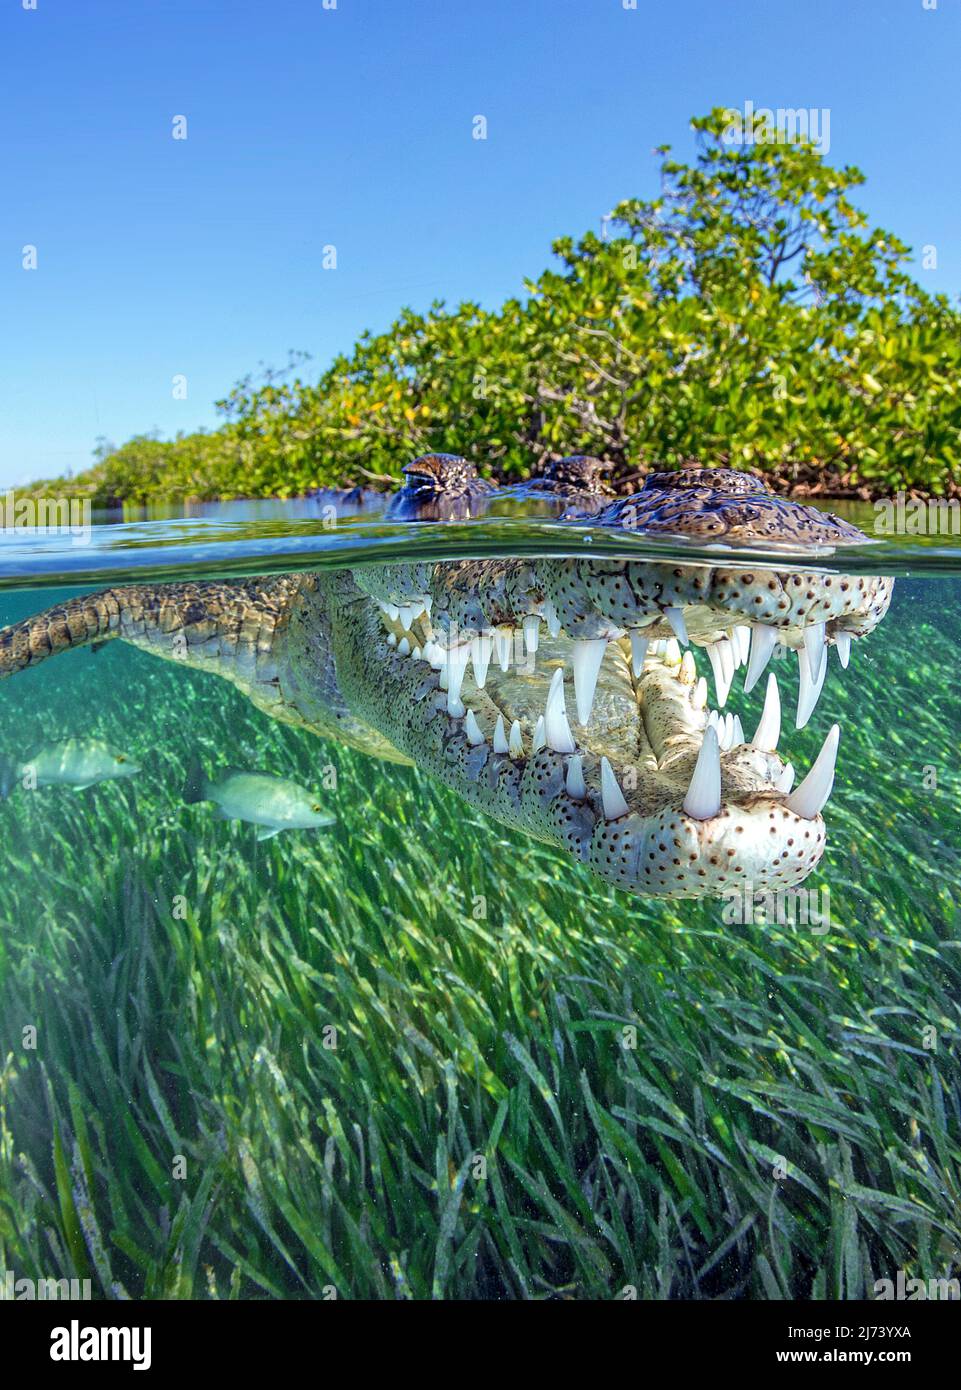 American crocodile (Crocodylus acutus), split image, over under, Jardines de la Reina, Cuba, Caribbean sea, Caribbean Stock Photo